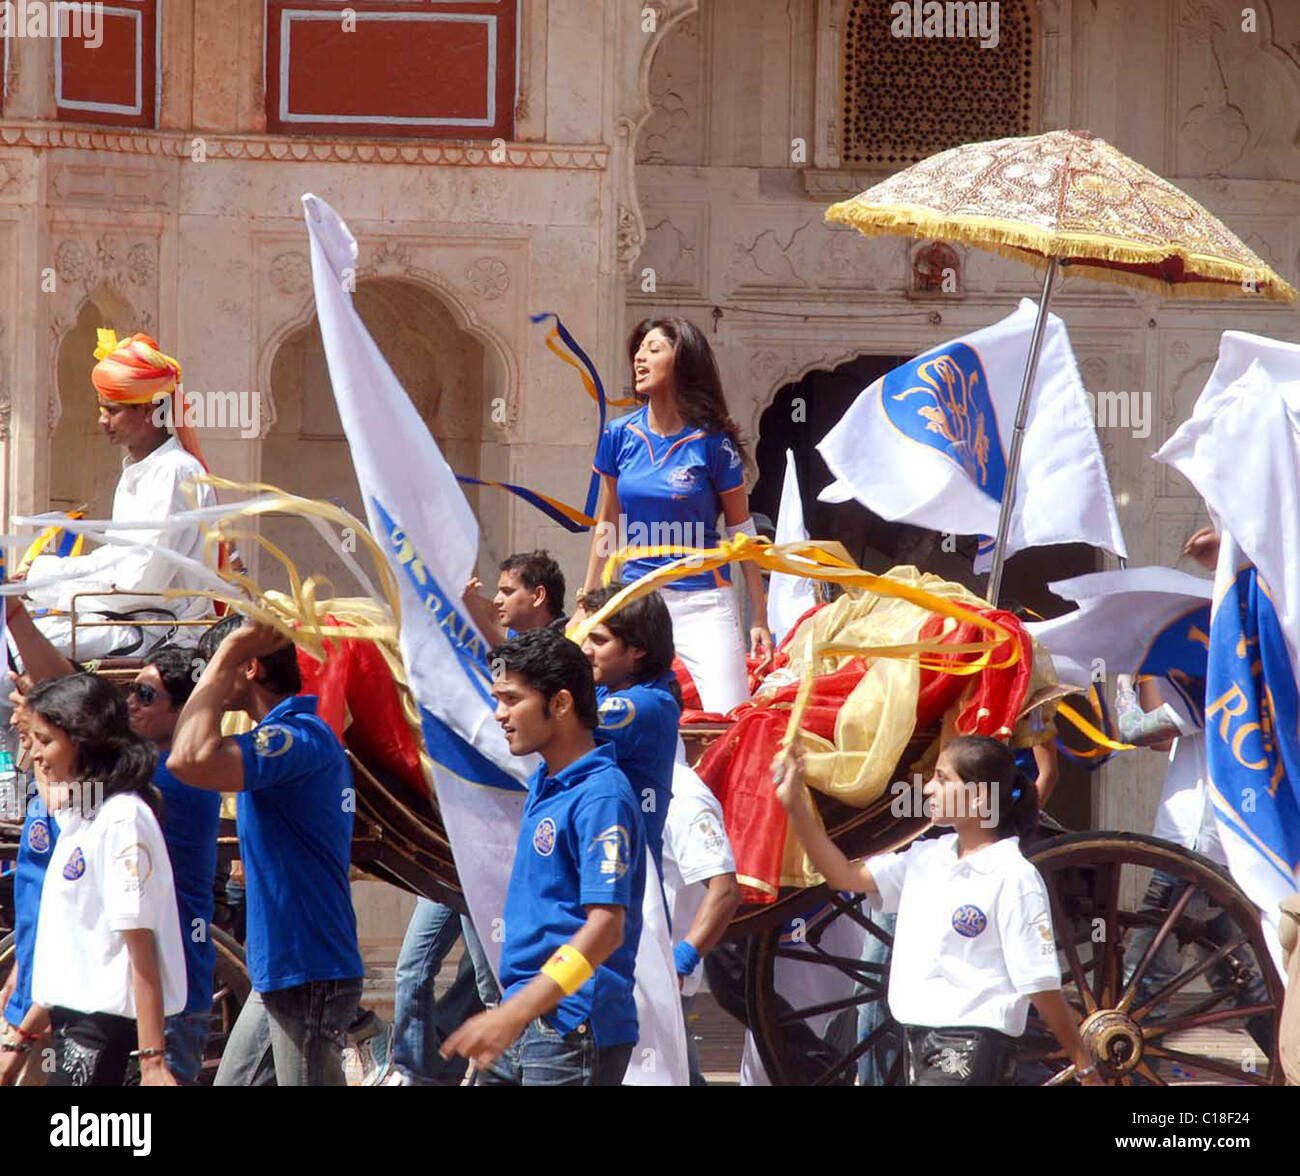 L'attrice di Bollywood Shilpa Shetty durante le riprese per il suo sistema di epilazione a luce pulsata di cricket il Rajasthan Royals India - Marzo 2009 Foto Stock